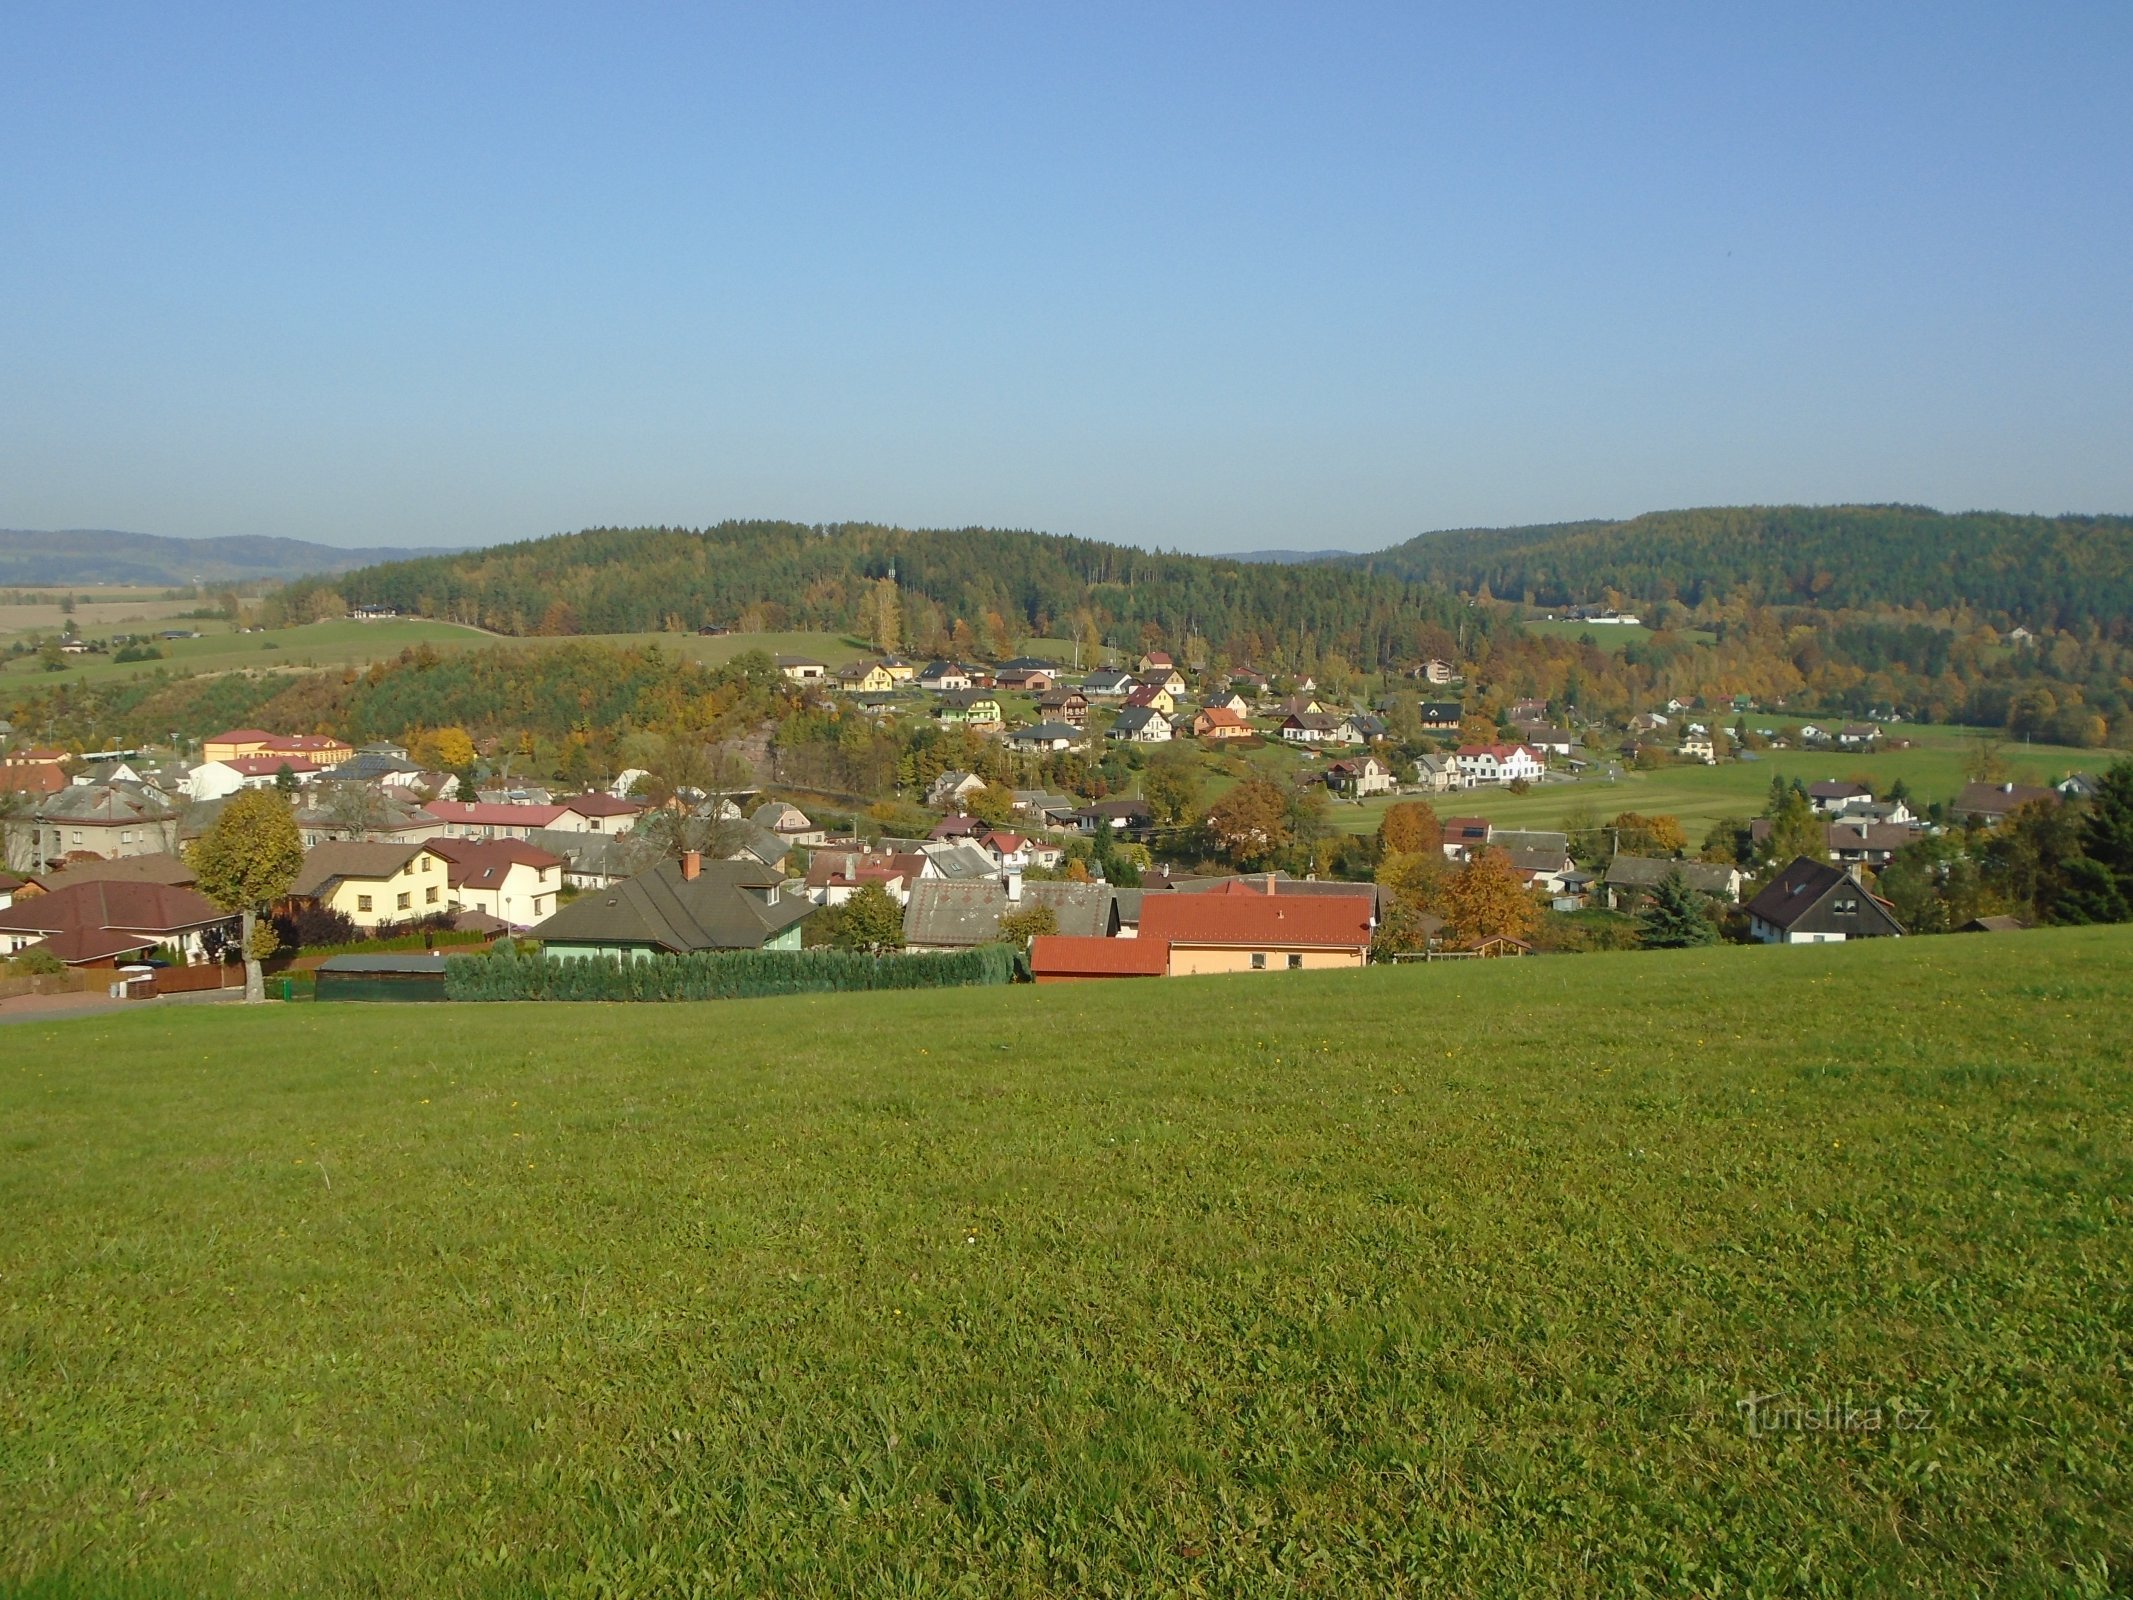 Blick auf Havlovice, Háječek befindet sich in der Mitte über dem Dorf